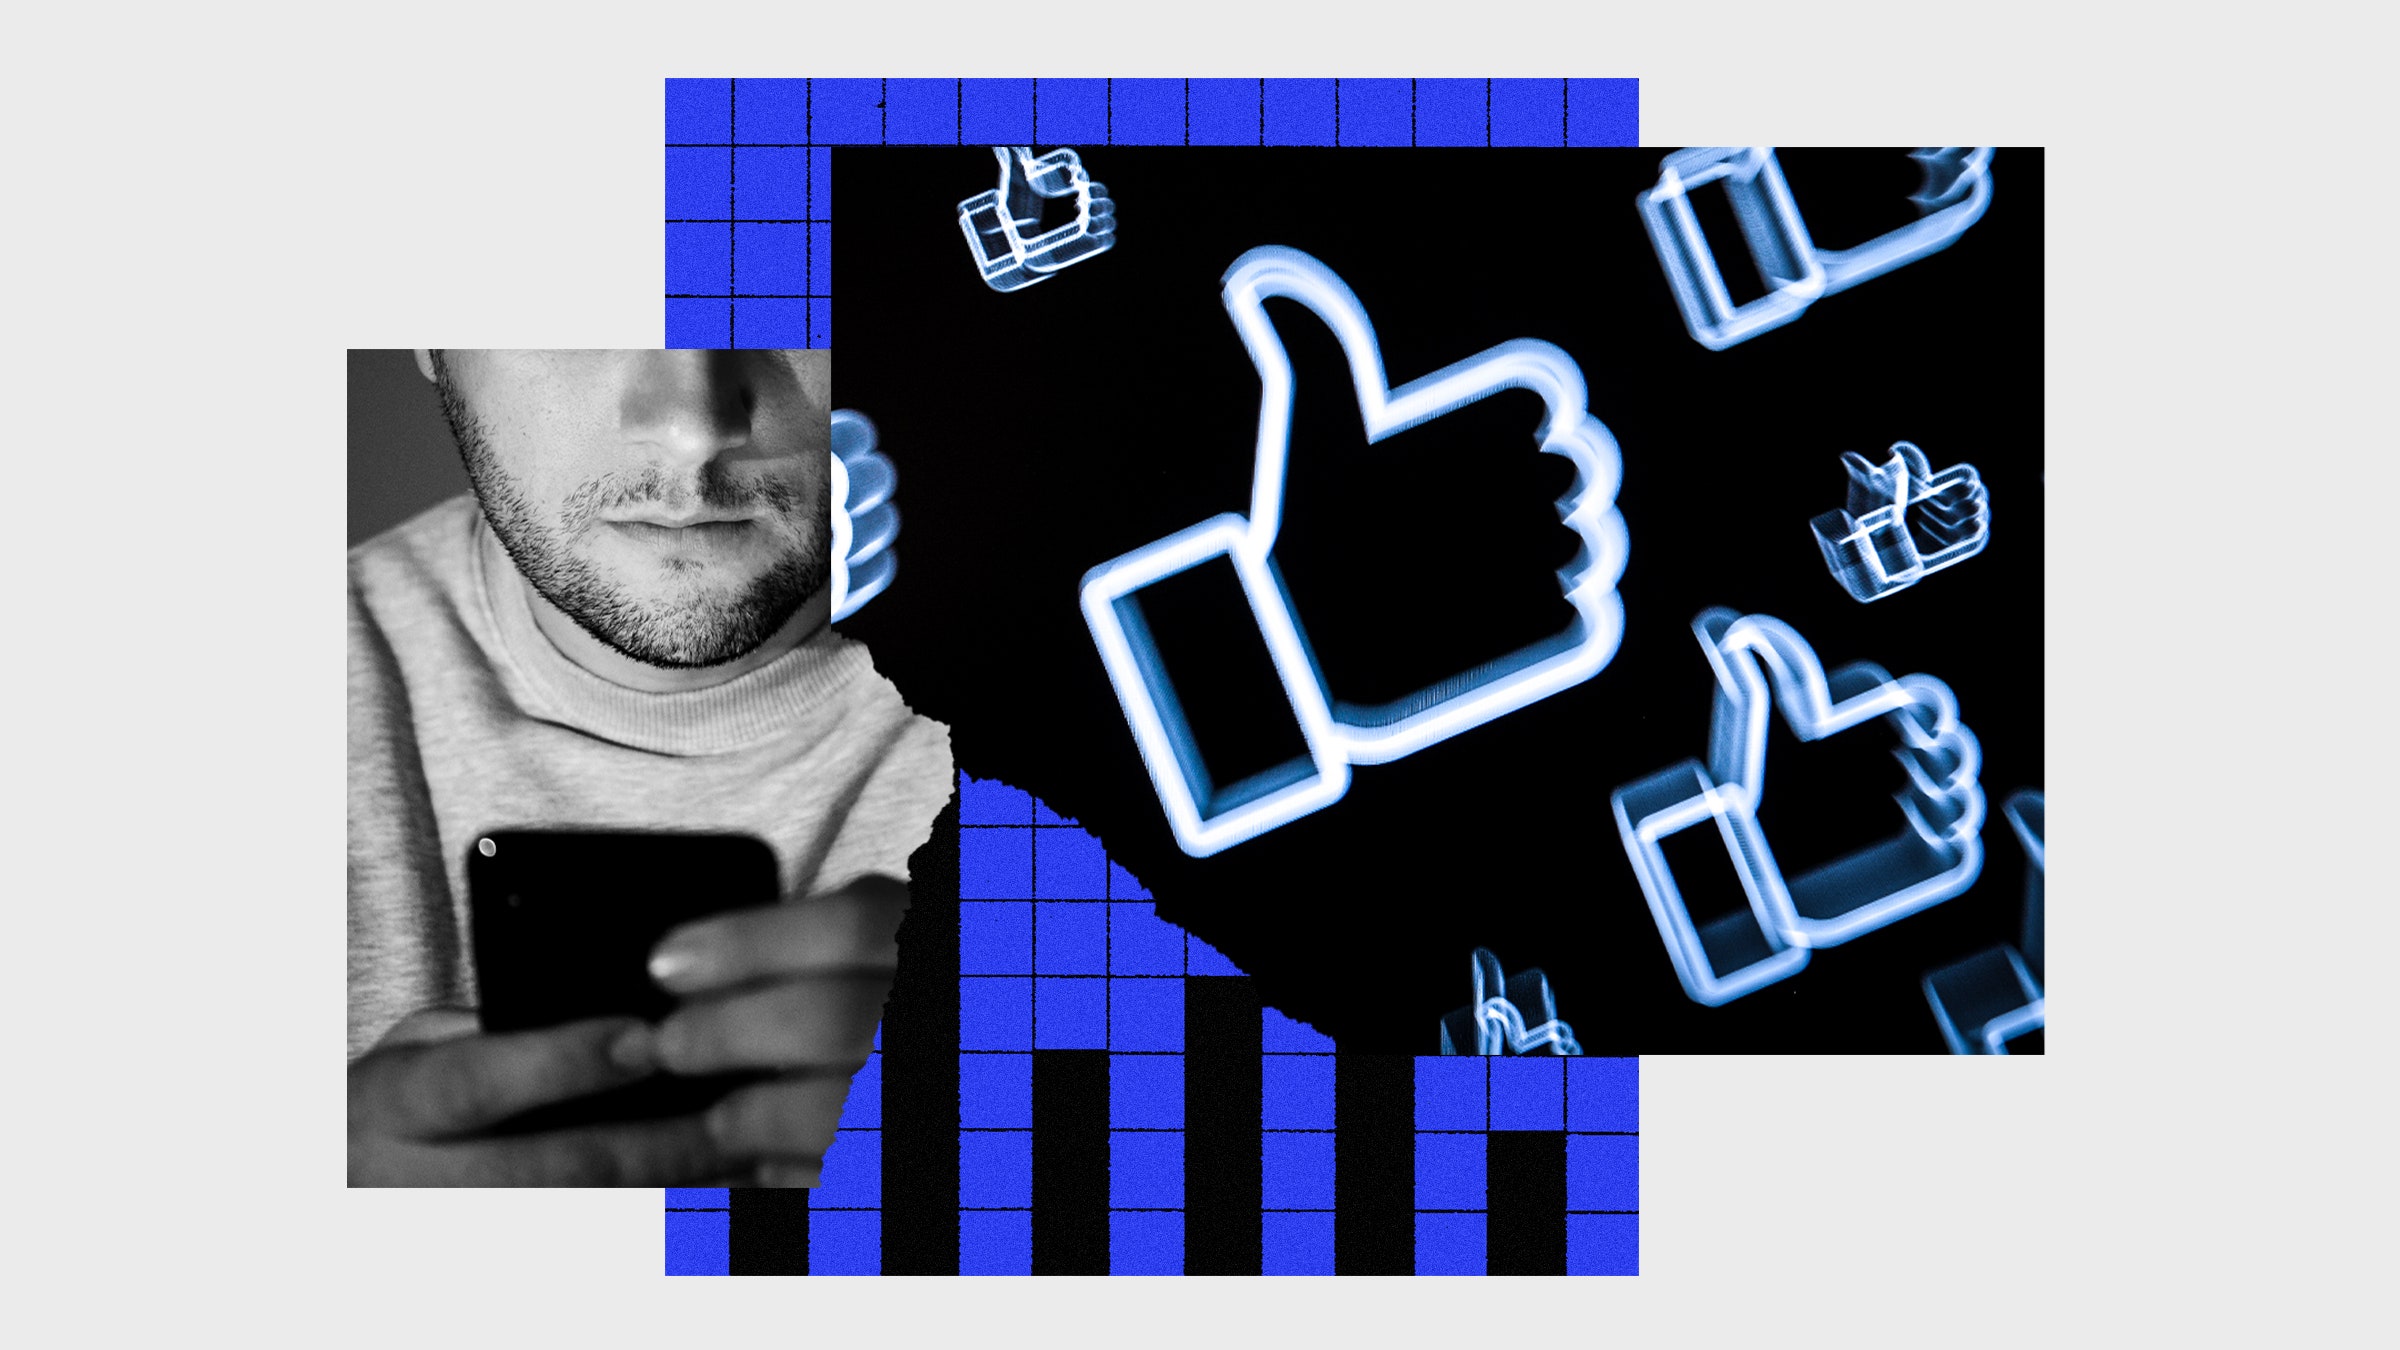 Colagem de fotos de símbolos semelhantes ao Facebook, homem olhando para o telefone e gráficos